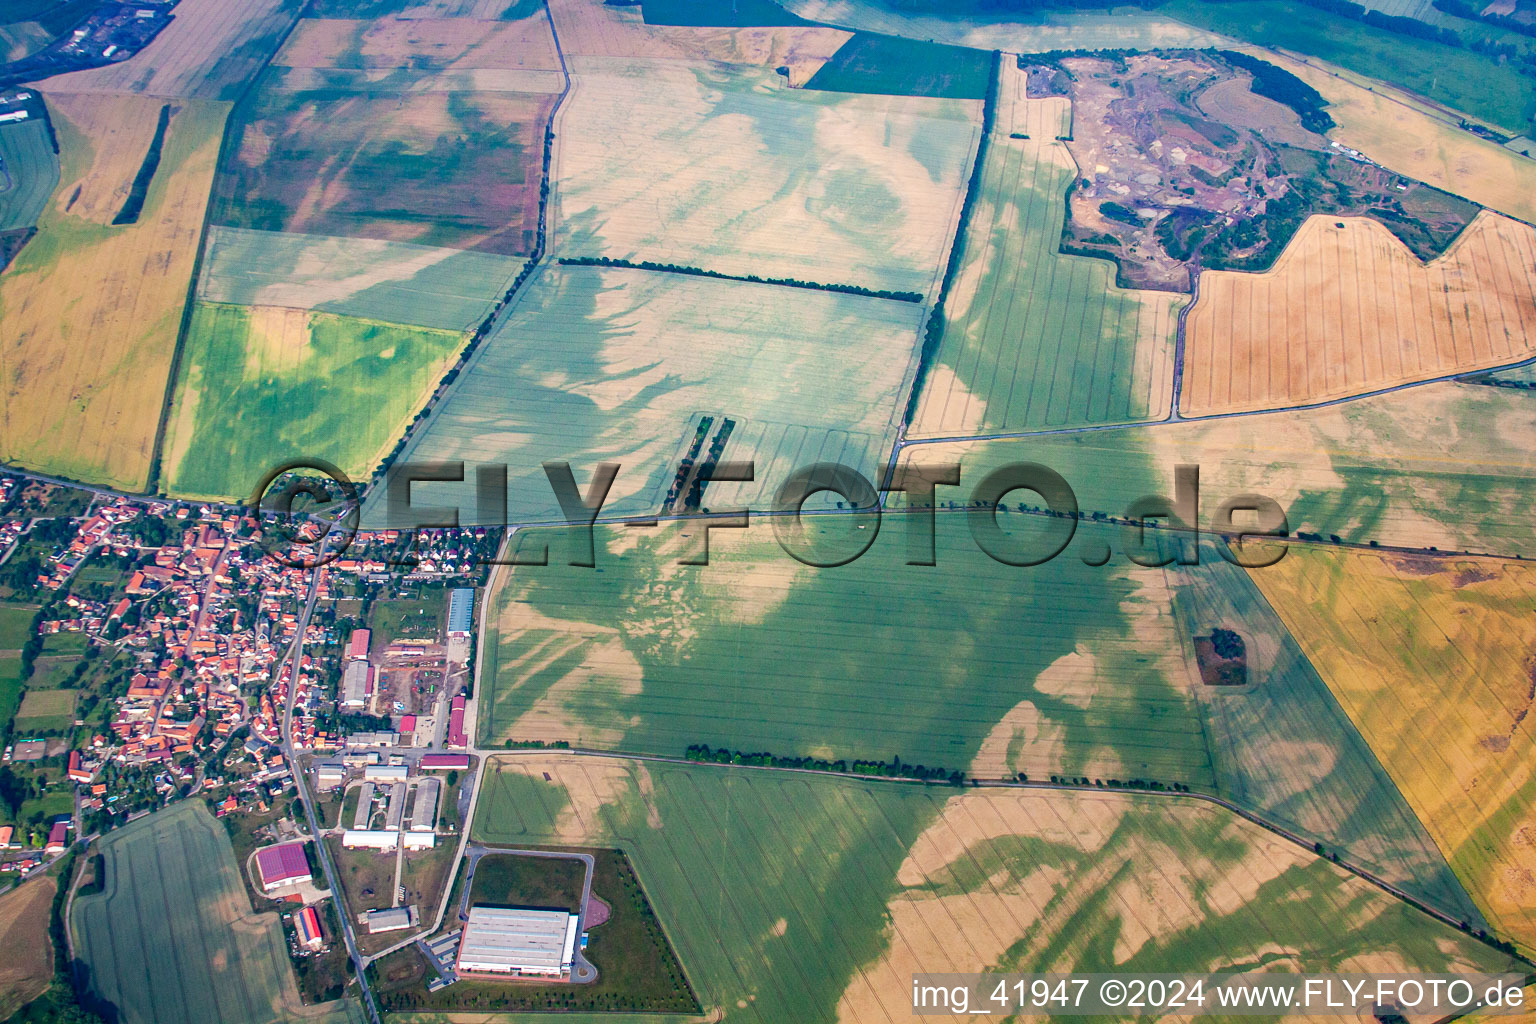 Luftbild von Durch Bodenerosion und Wasser geprägte Strukturen auf landwirtschaftlichen Feldern in Thale im Bundesland Sachsen-Anhalt, Deutschland